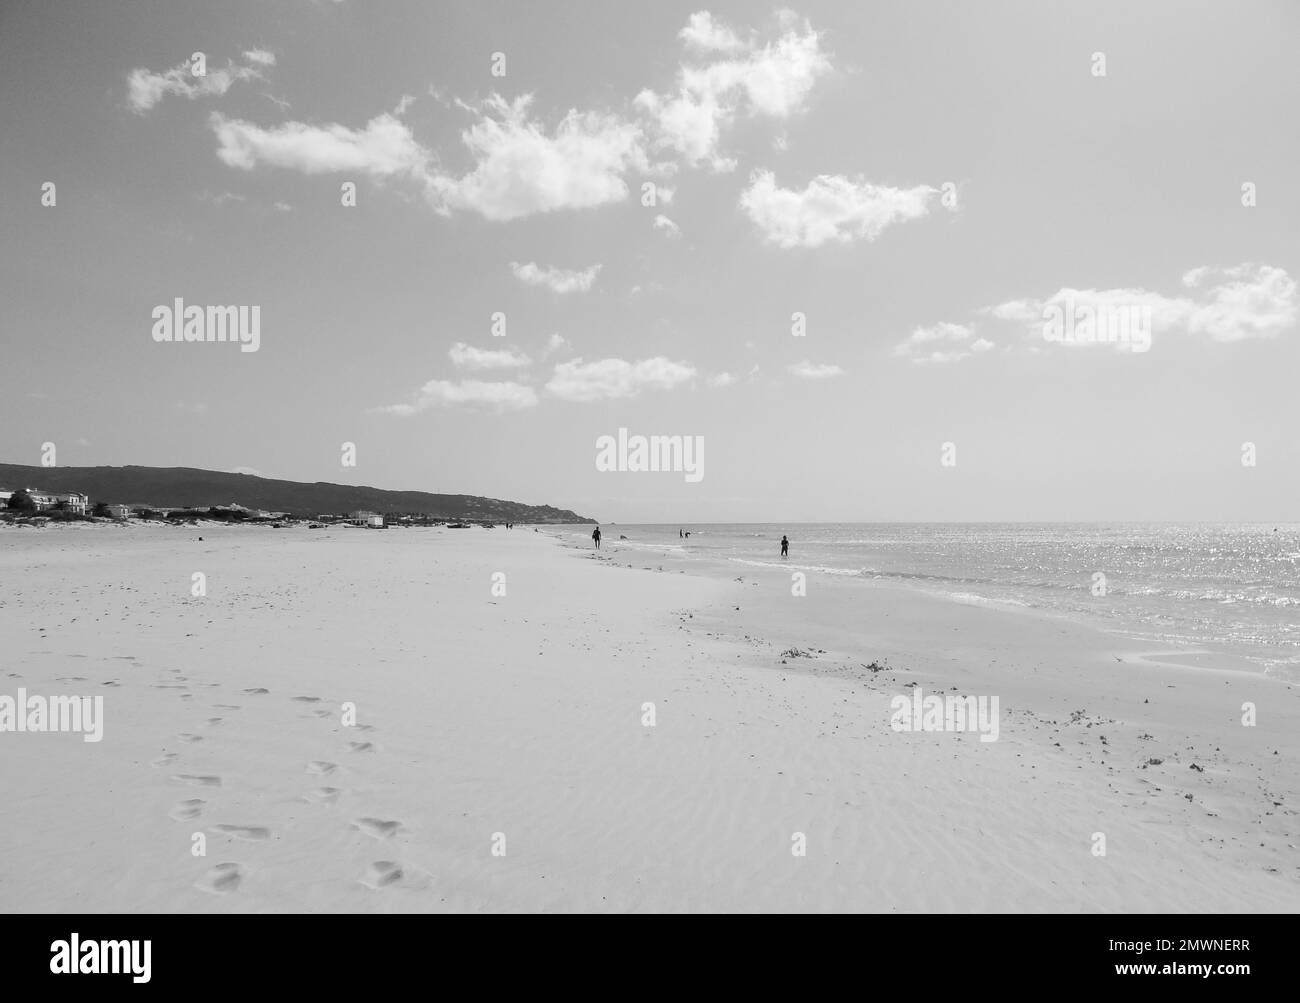 Une plage de sable, d'été avec des touristes, niveaux de gris Banque D'Images